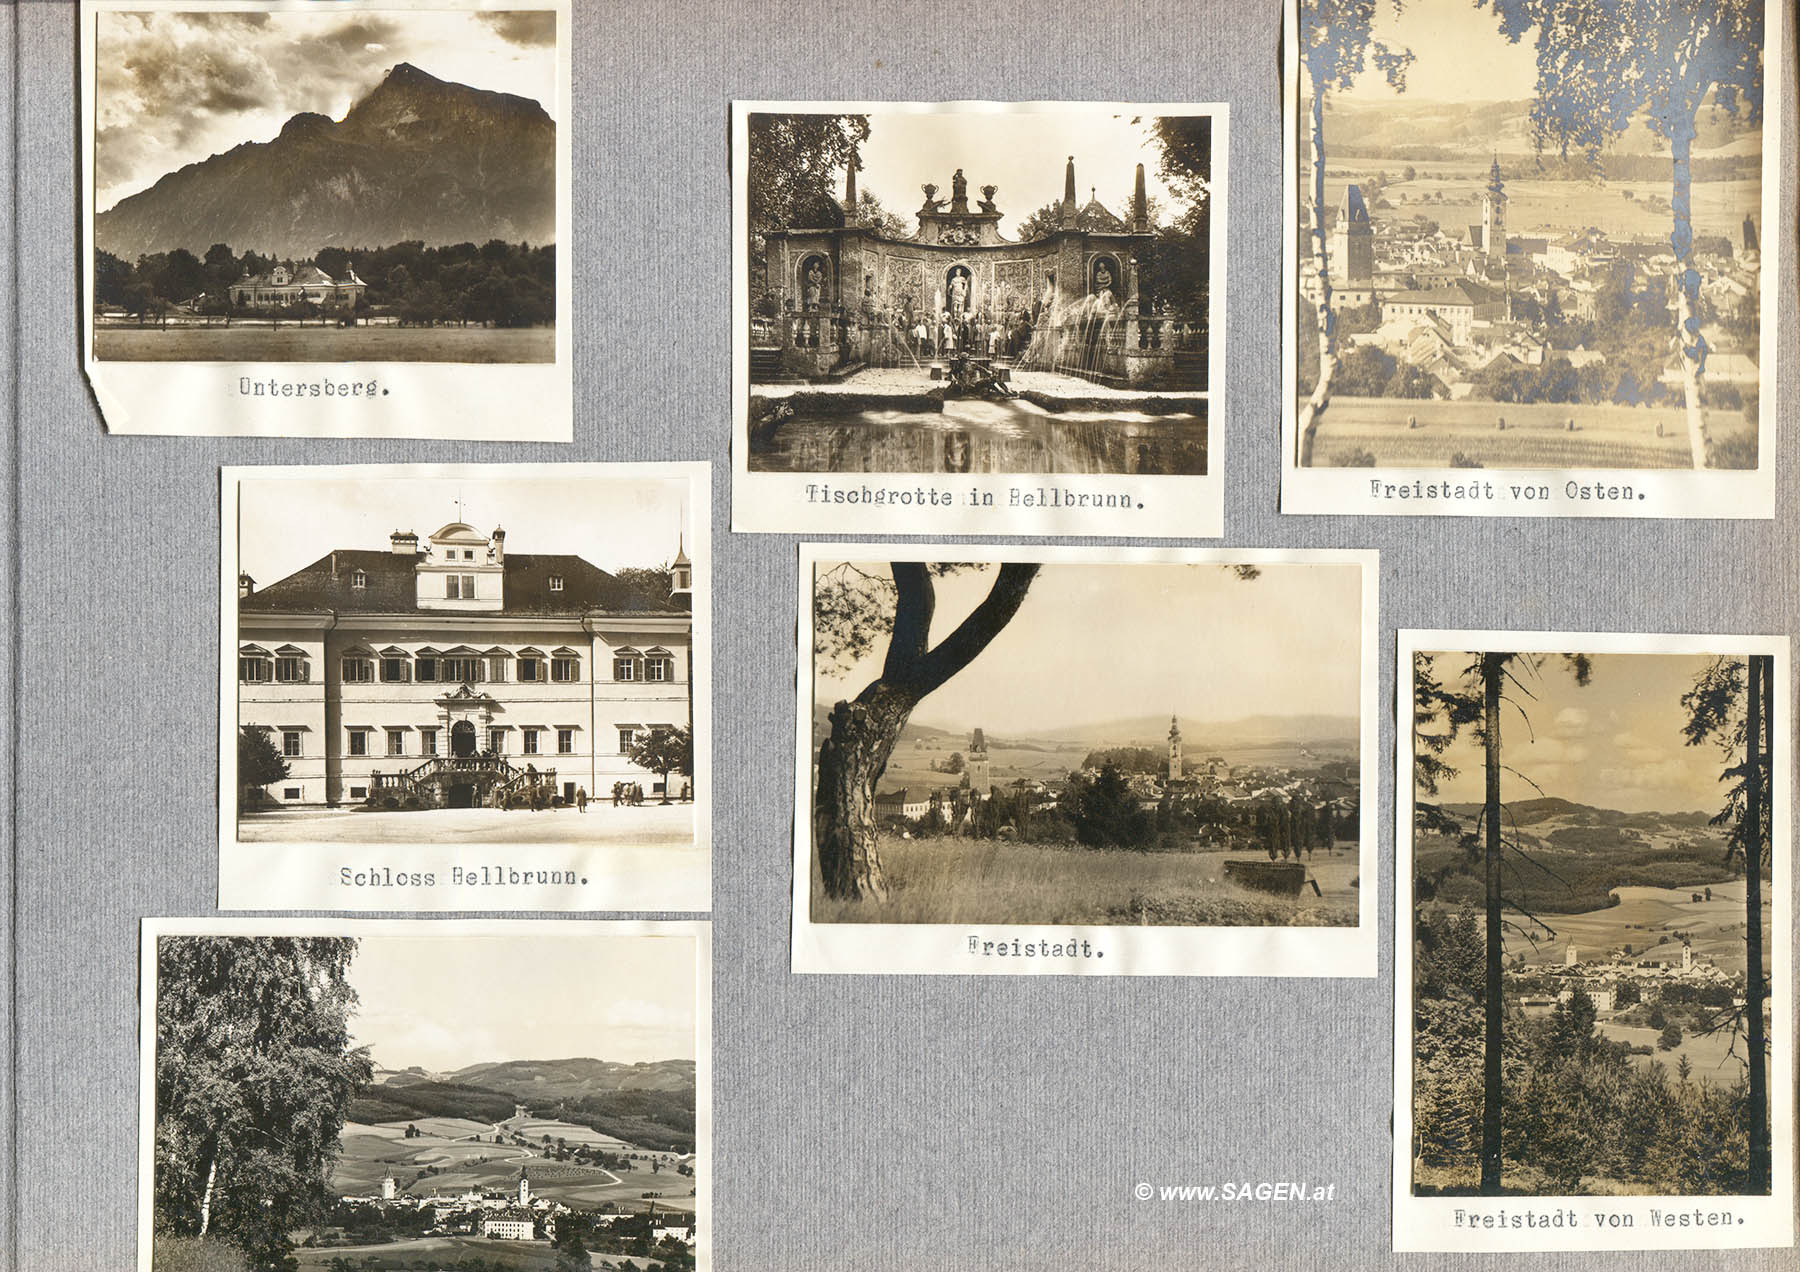 Mein Sommer 1929 - Fotoalbum und Tagebuch